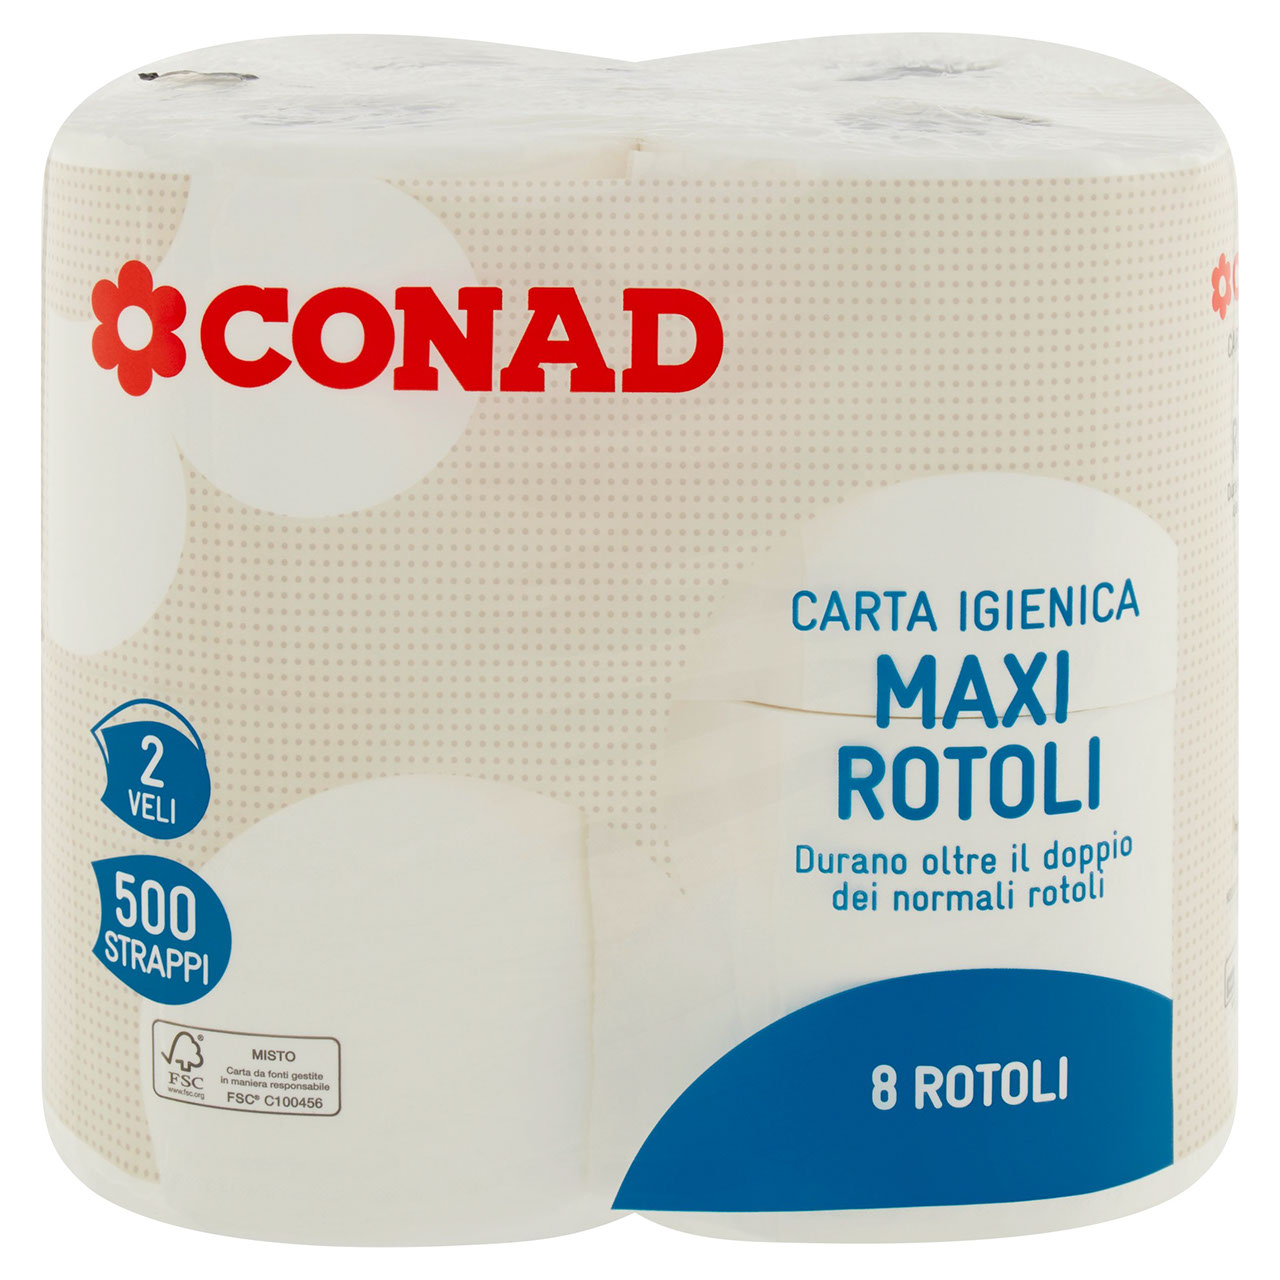 Carta igienica Maxi Rotoli in vendita online